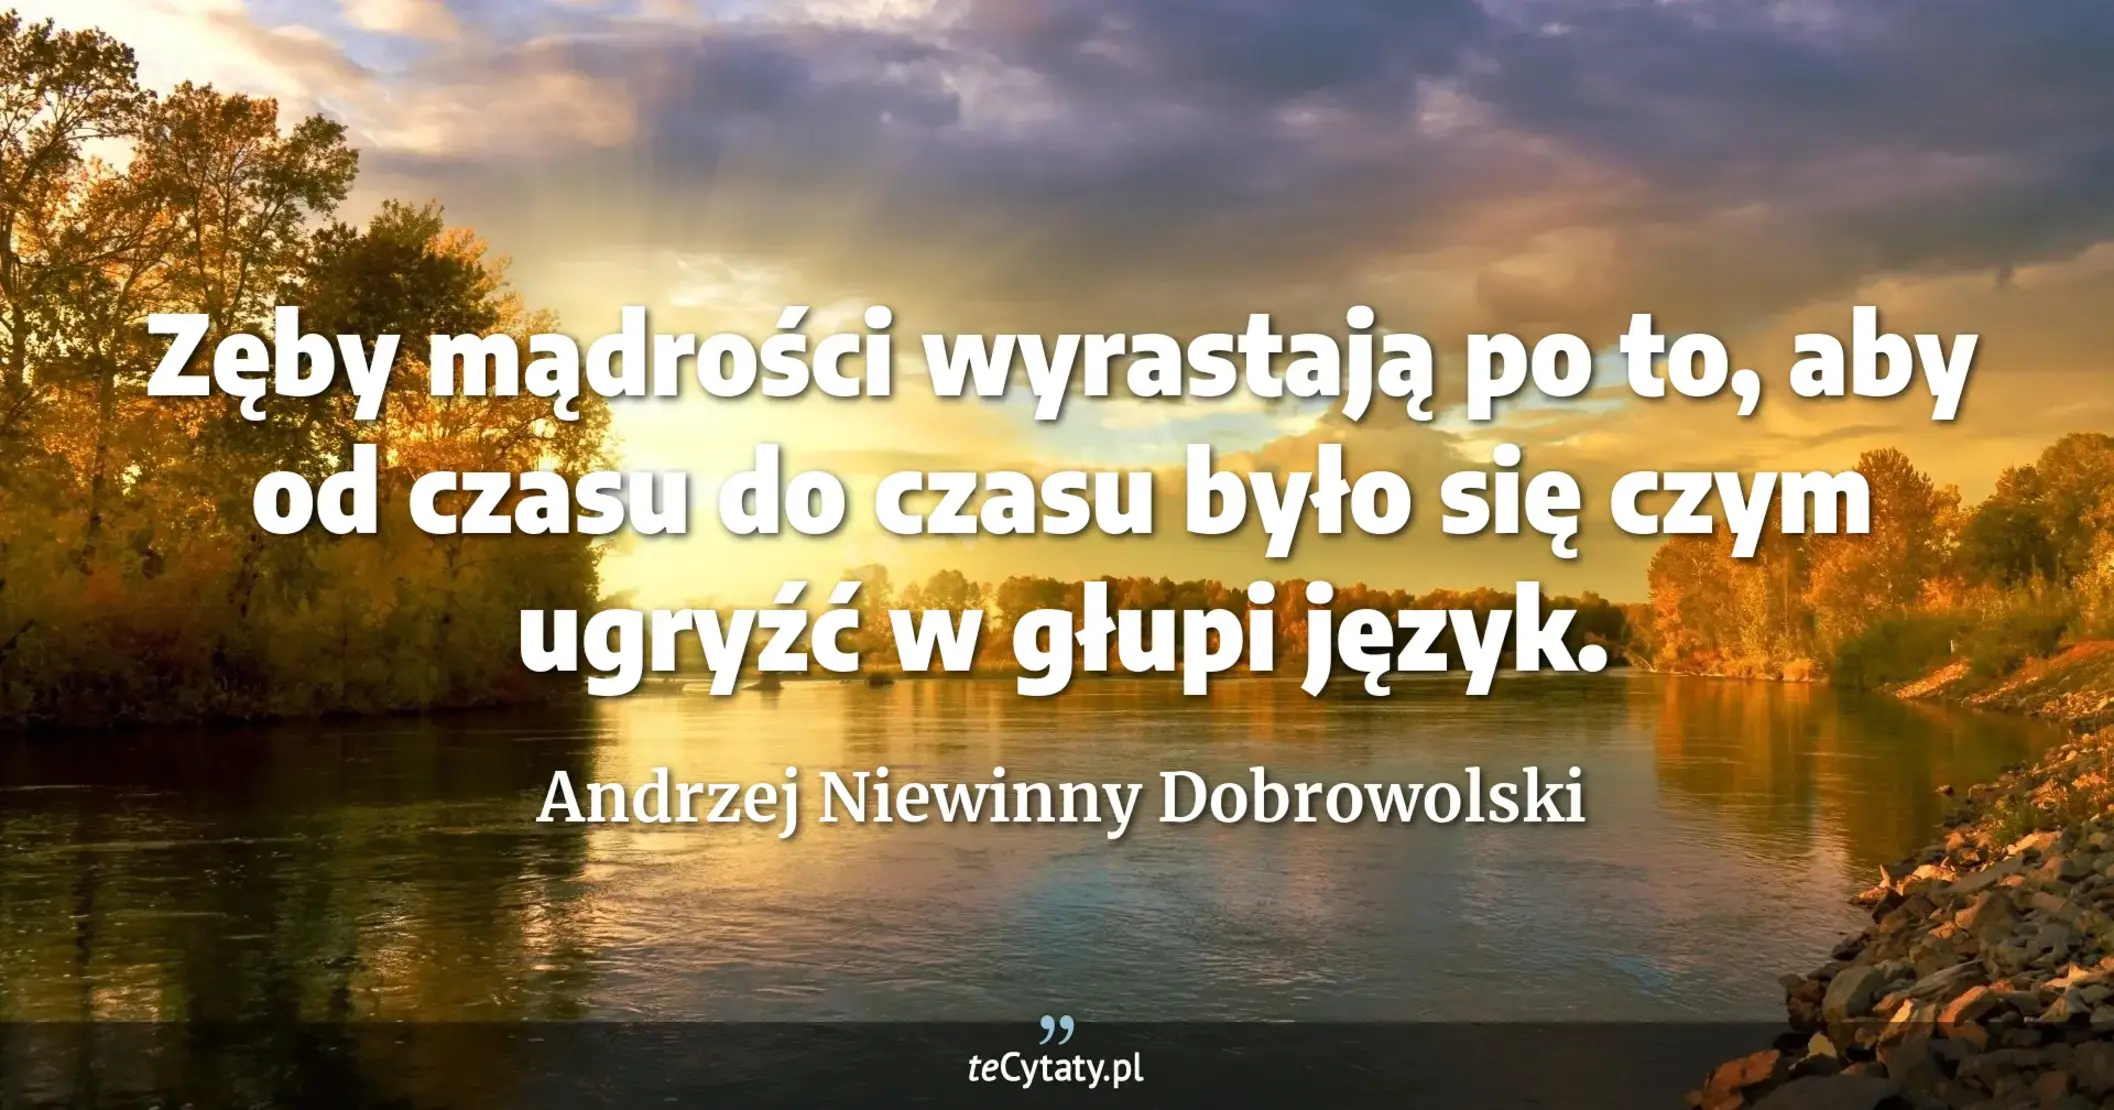 Zęby mądrości wyrastają po to, aby od czasu do czasu było się czym ugryźć w głupi język. - Andrzej Niewinny Dobrowolski